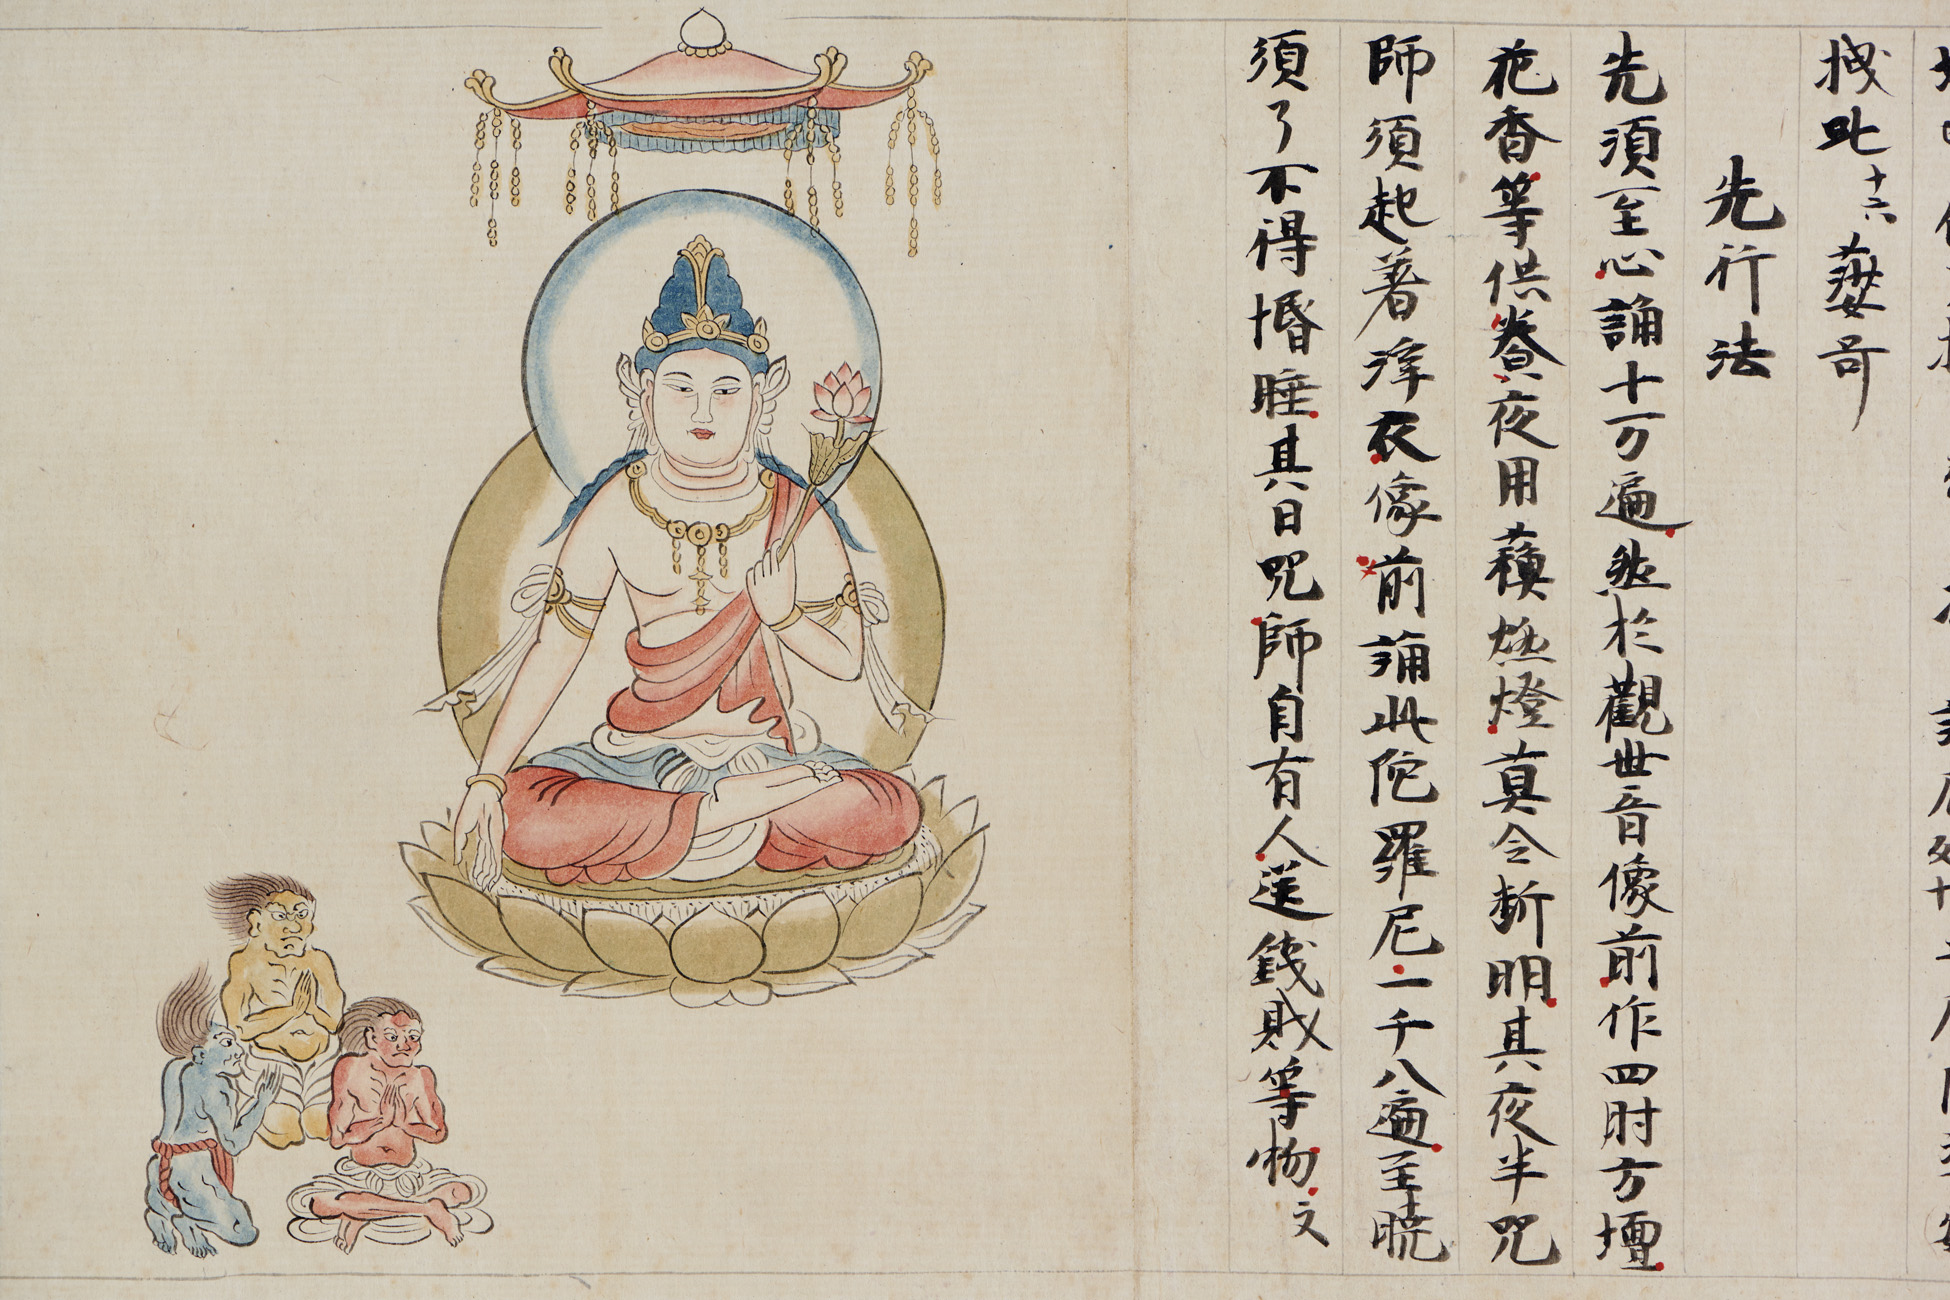 New Arrival “Kō-ō Bodhisattva Iconograph”